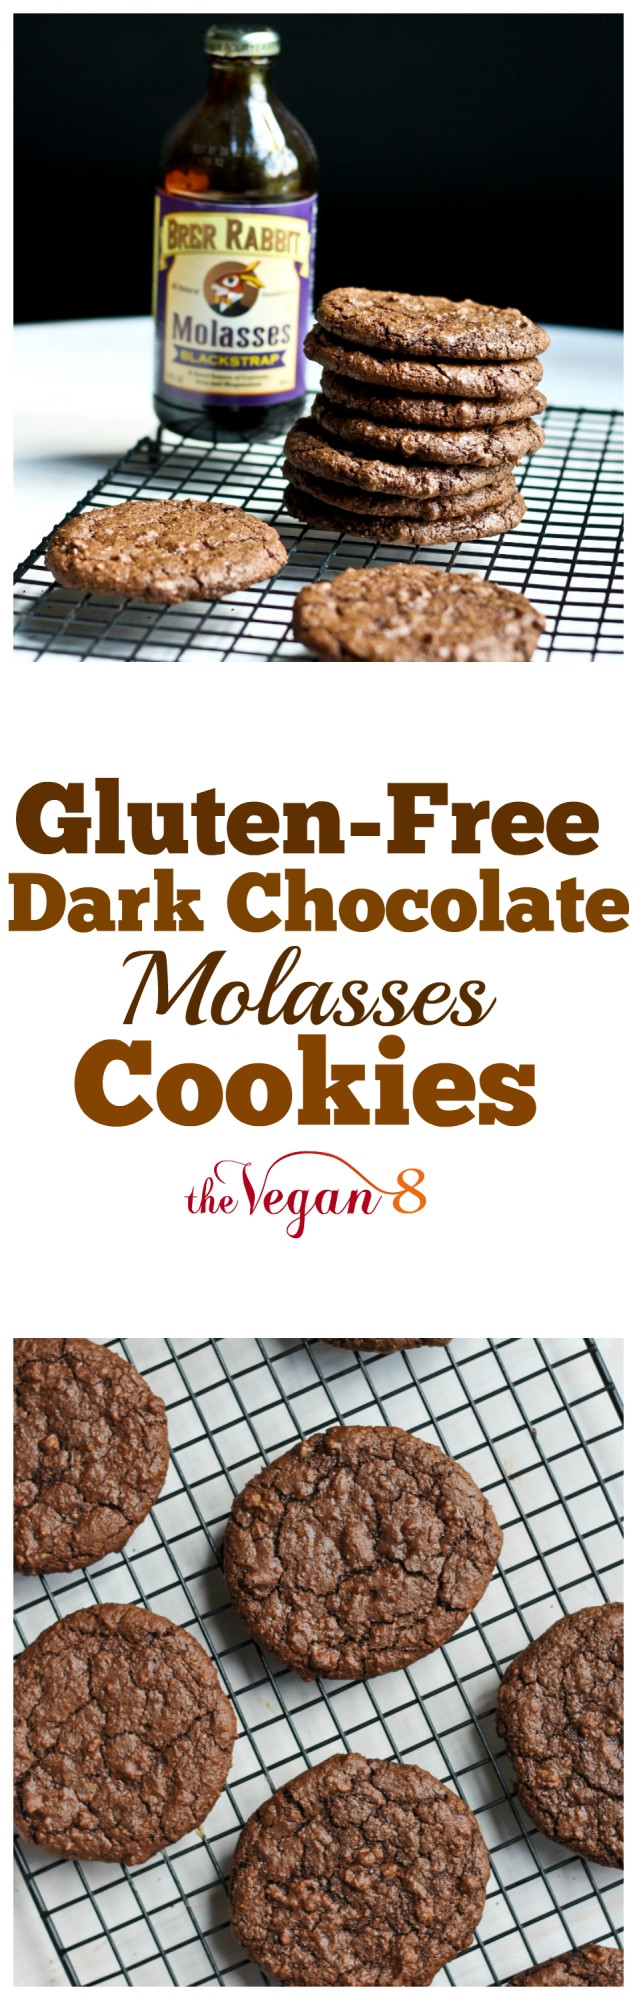 Dark Molasses Cookies
 Dark Chocolate Molasses Cookies The Vegan 8